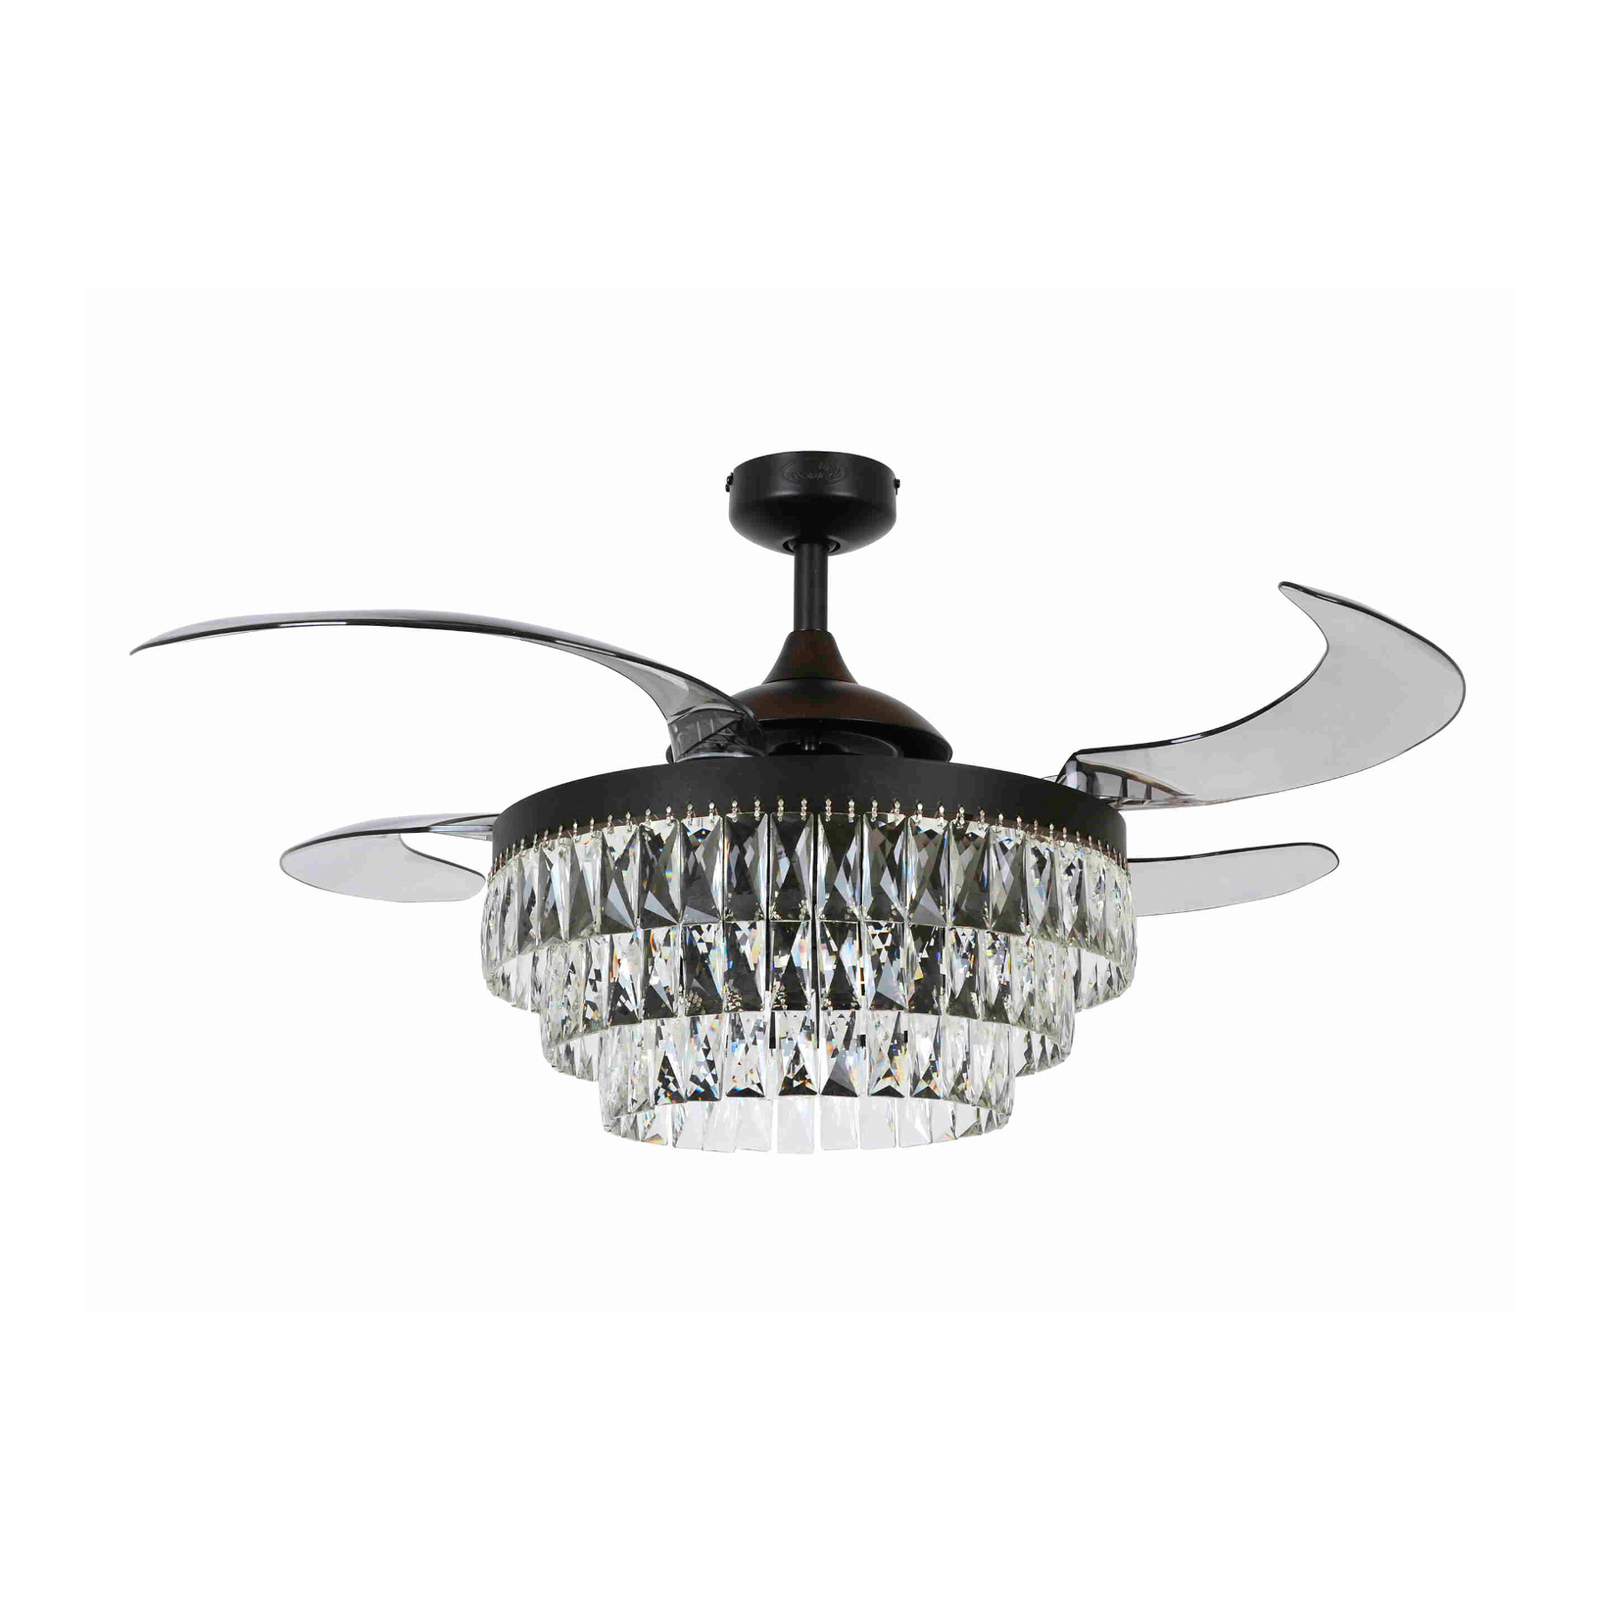 Beacon ceiling fan with light Fanaway Veil black silent